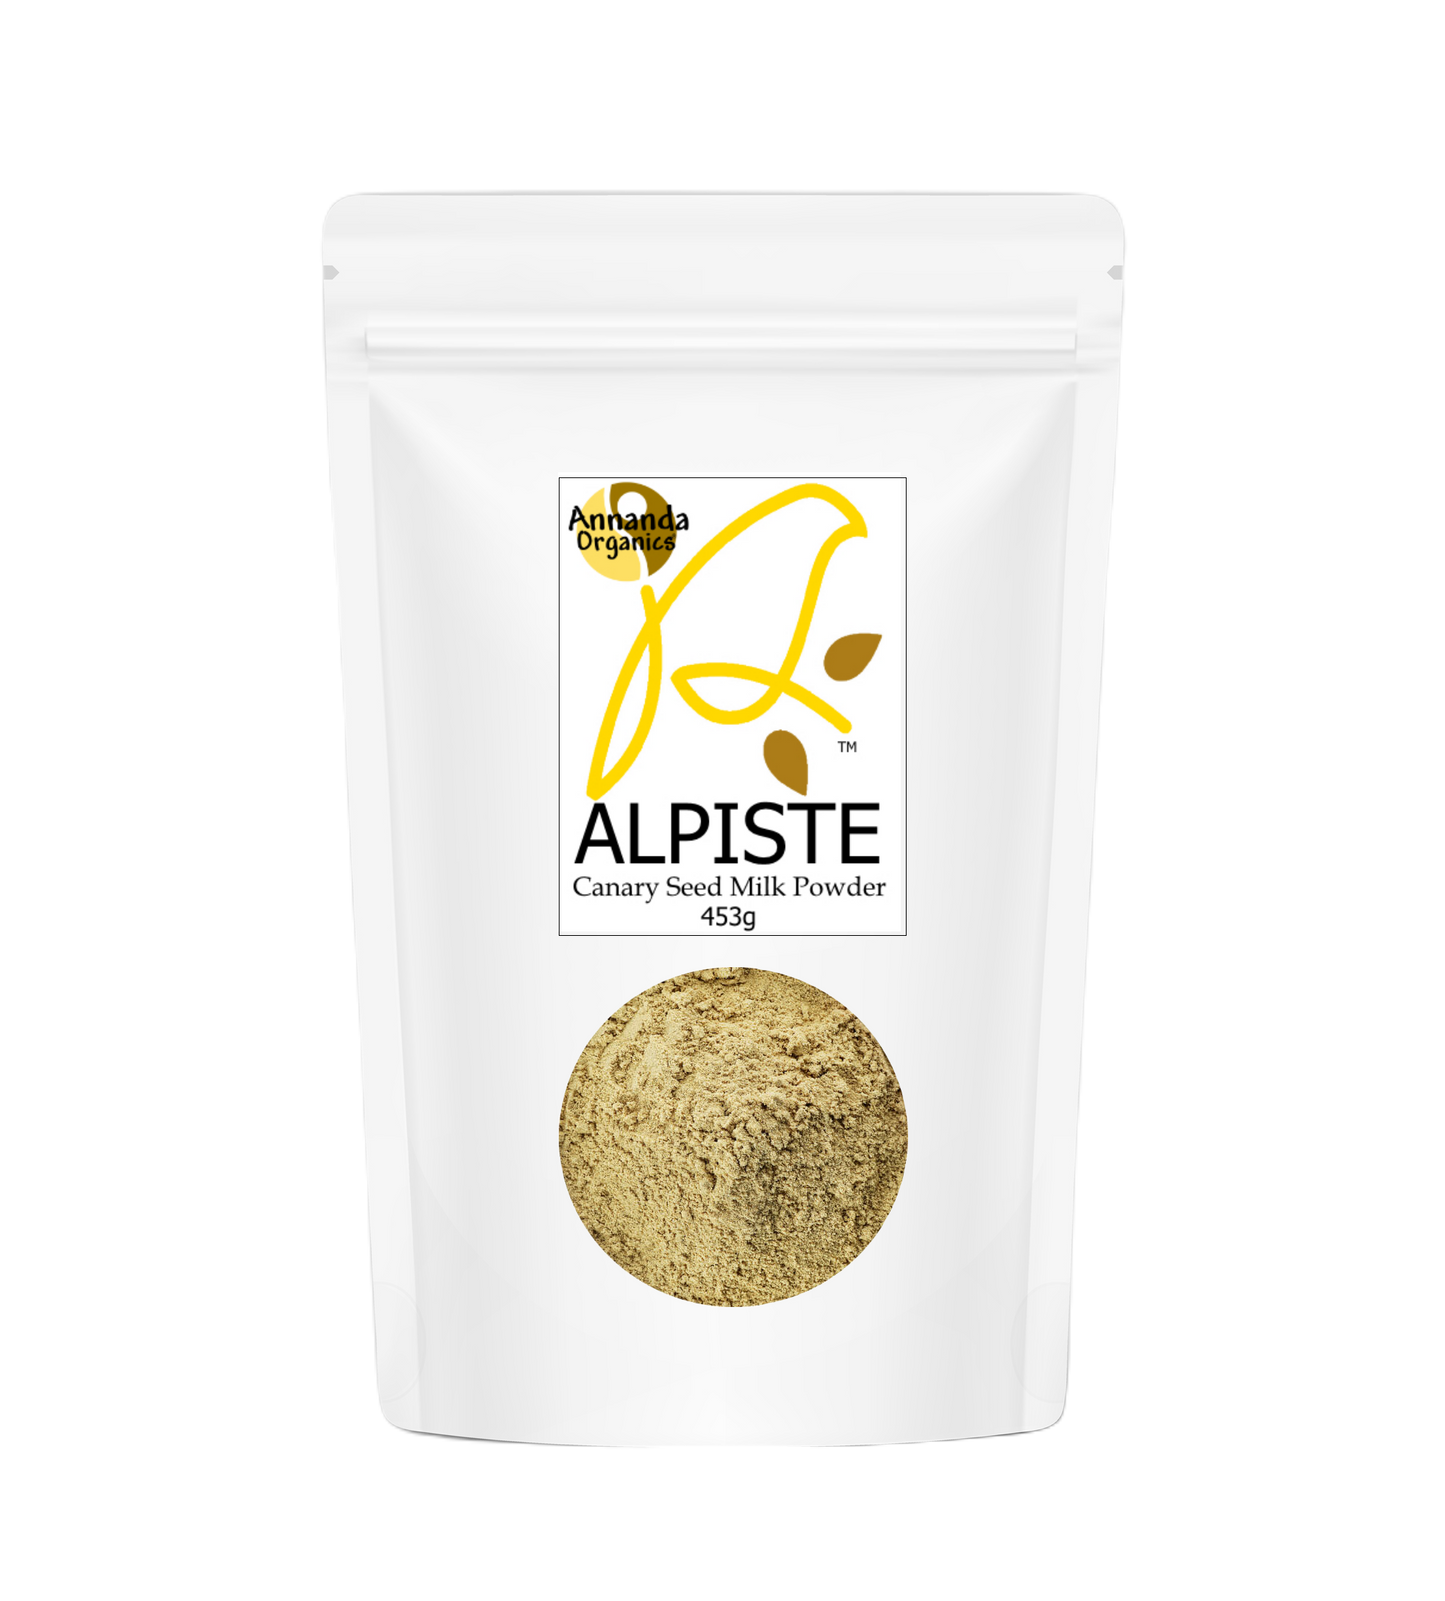 Alpiste Milk Powder, canary seed milk powder